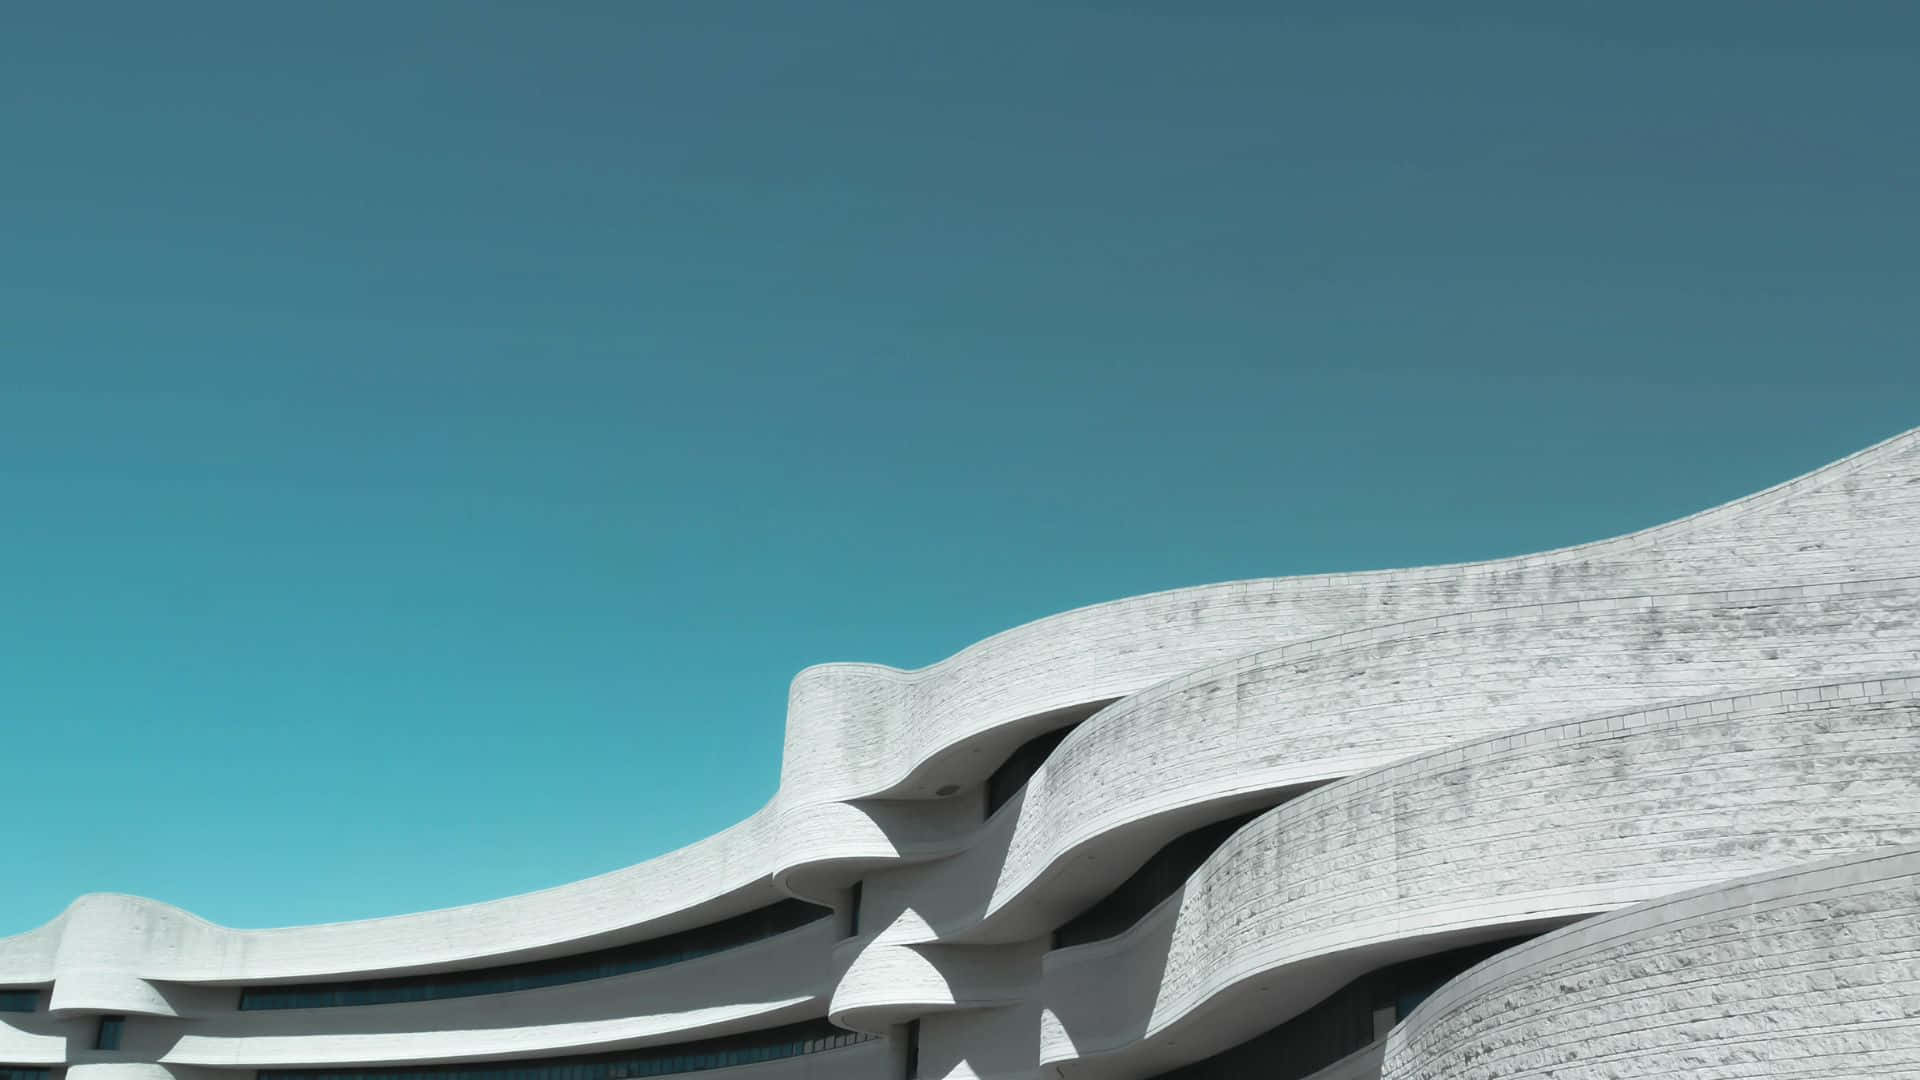 Einblick Ins Innere Der Modernisierten, Minimalistischen Architektur Des Guggenheim-museums In Bilbao, Spanien.